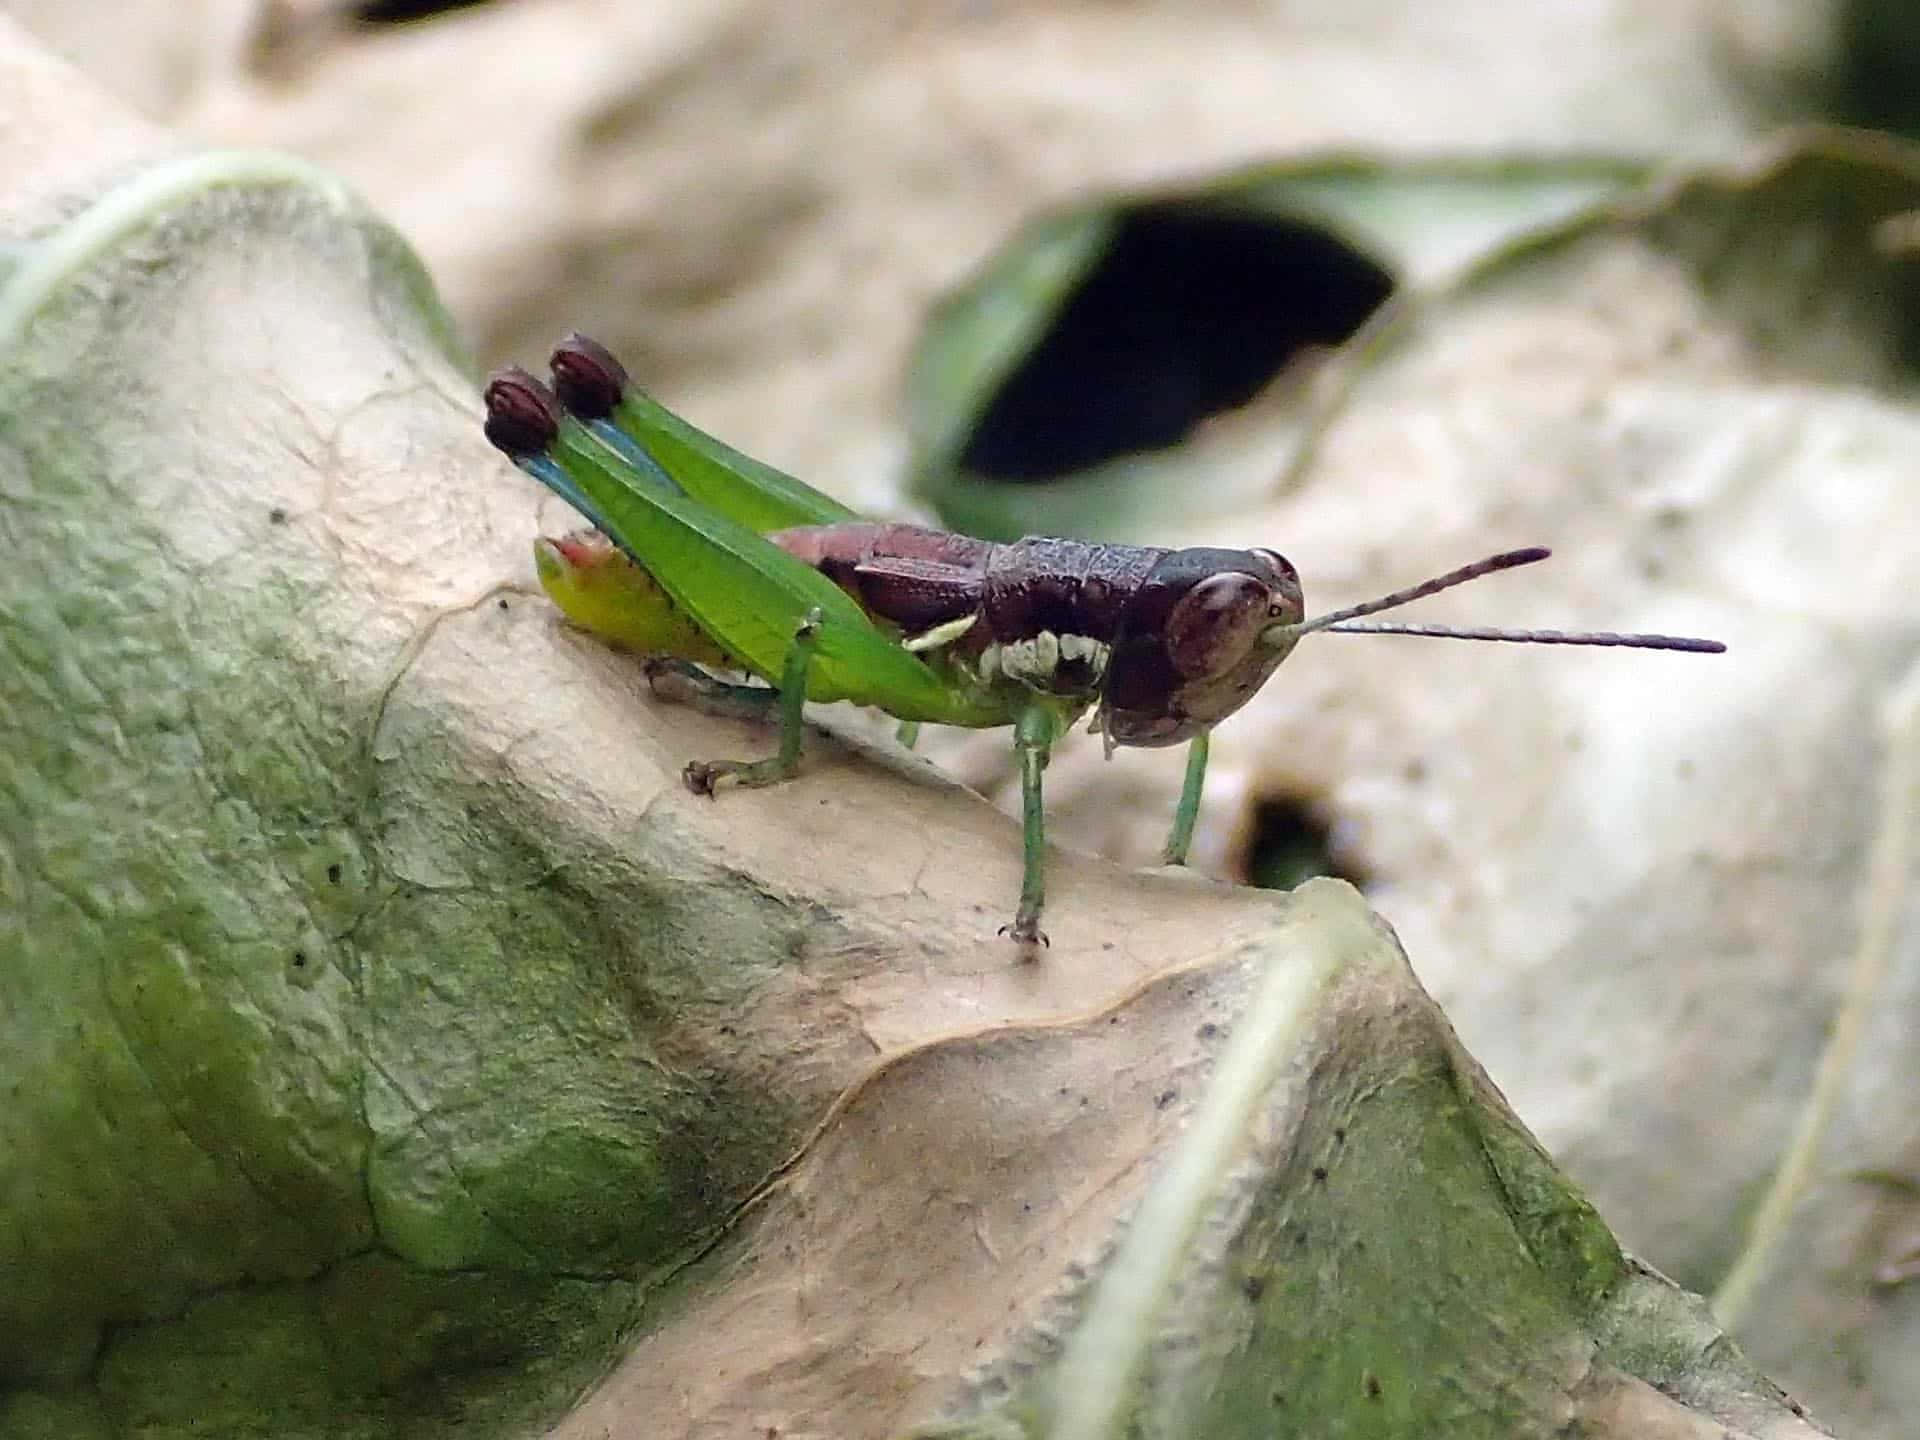 Stunning Close-up of a Grasshopper